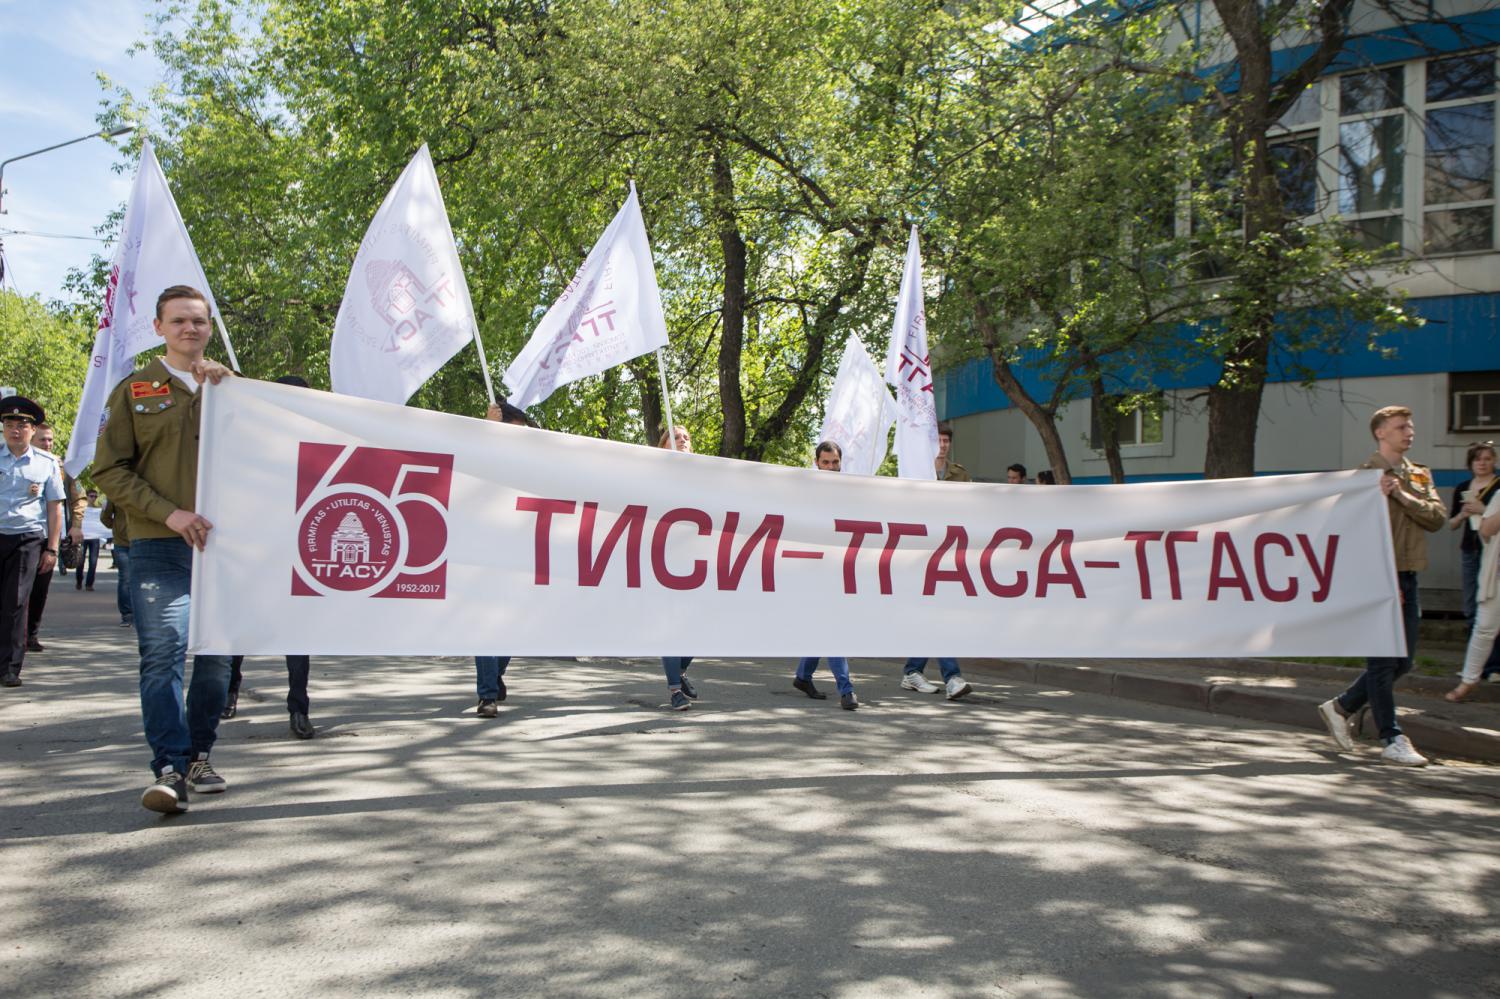 ТГАСУ, Томские новости, день рождения ТГАСУ вуз флешмоб воздушные шары ТГАСУ отпразднует день рождения танцевальным флешмобом и запуском воздушных шаров